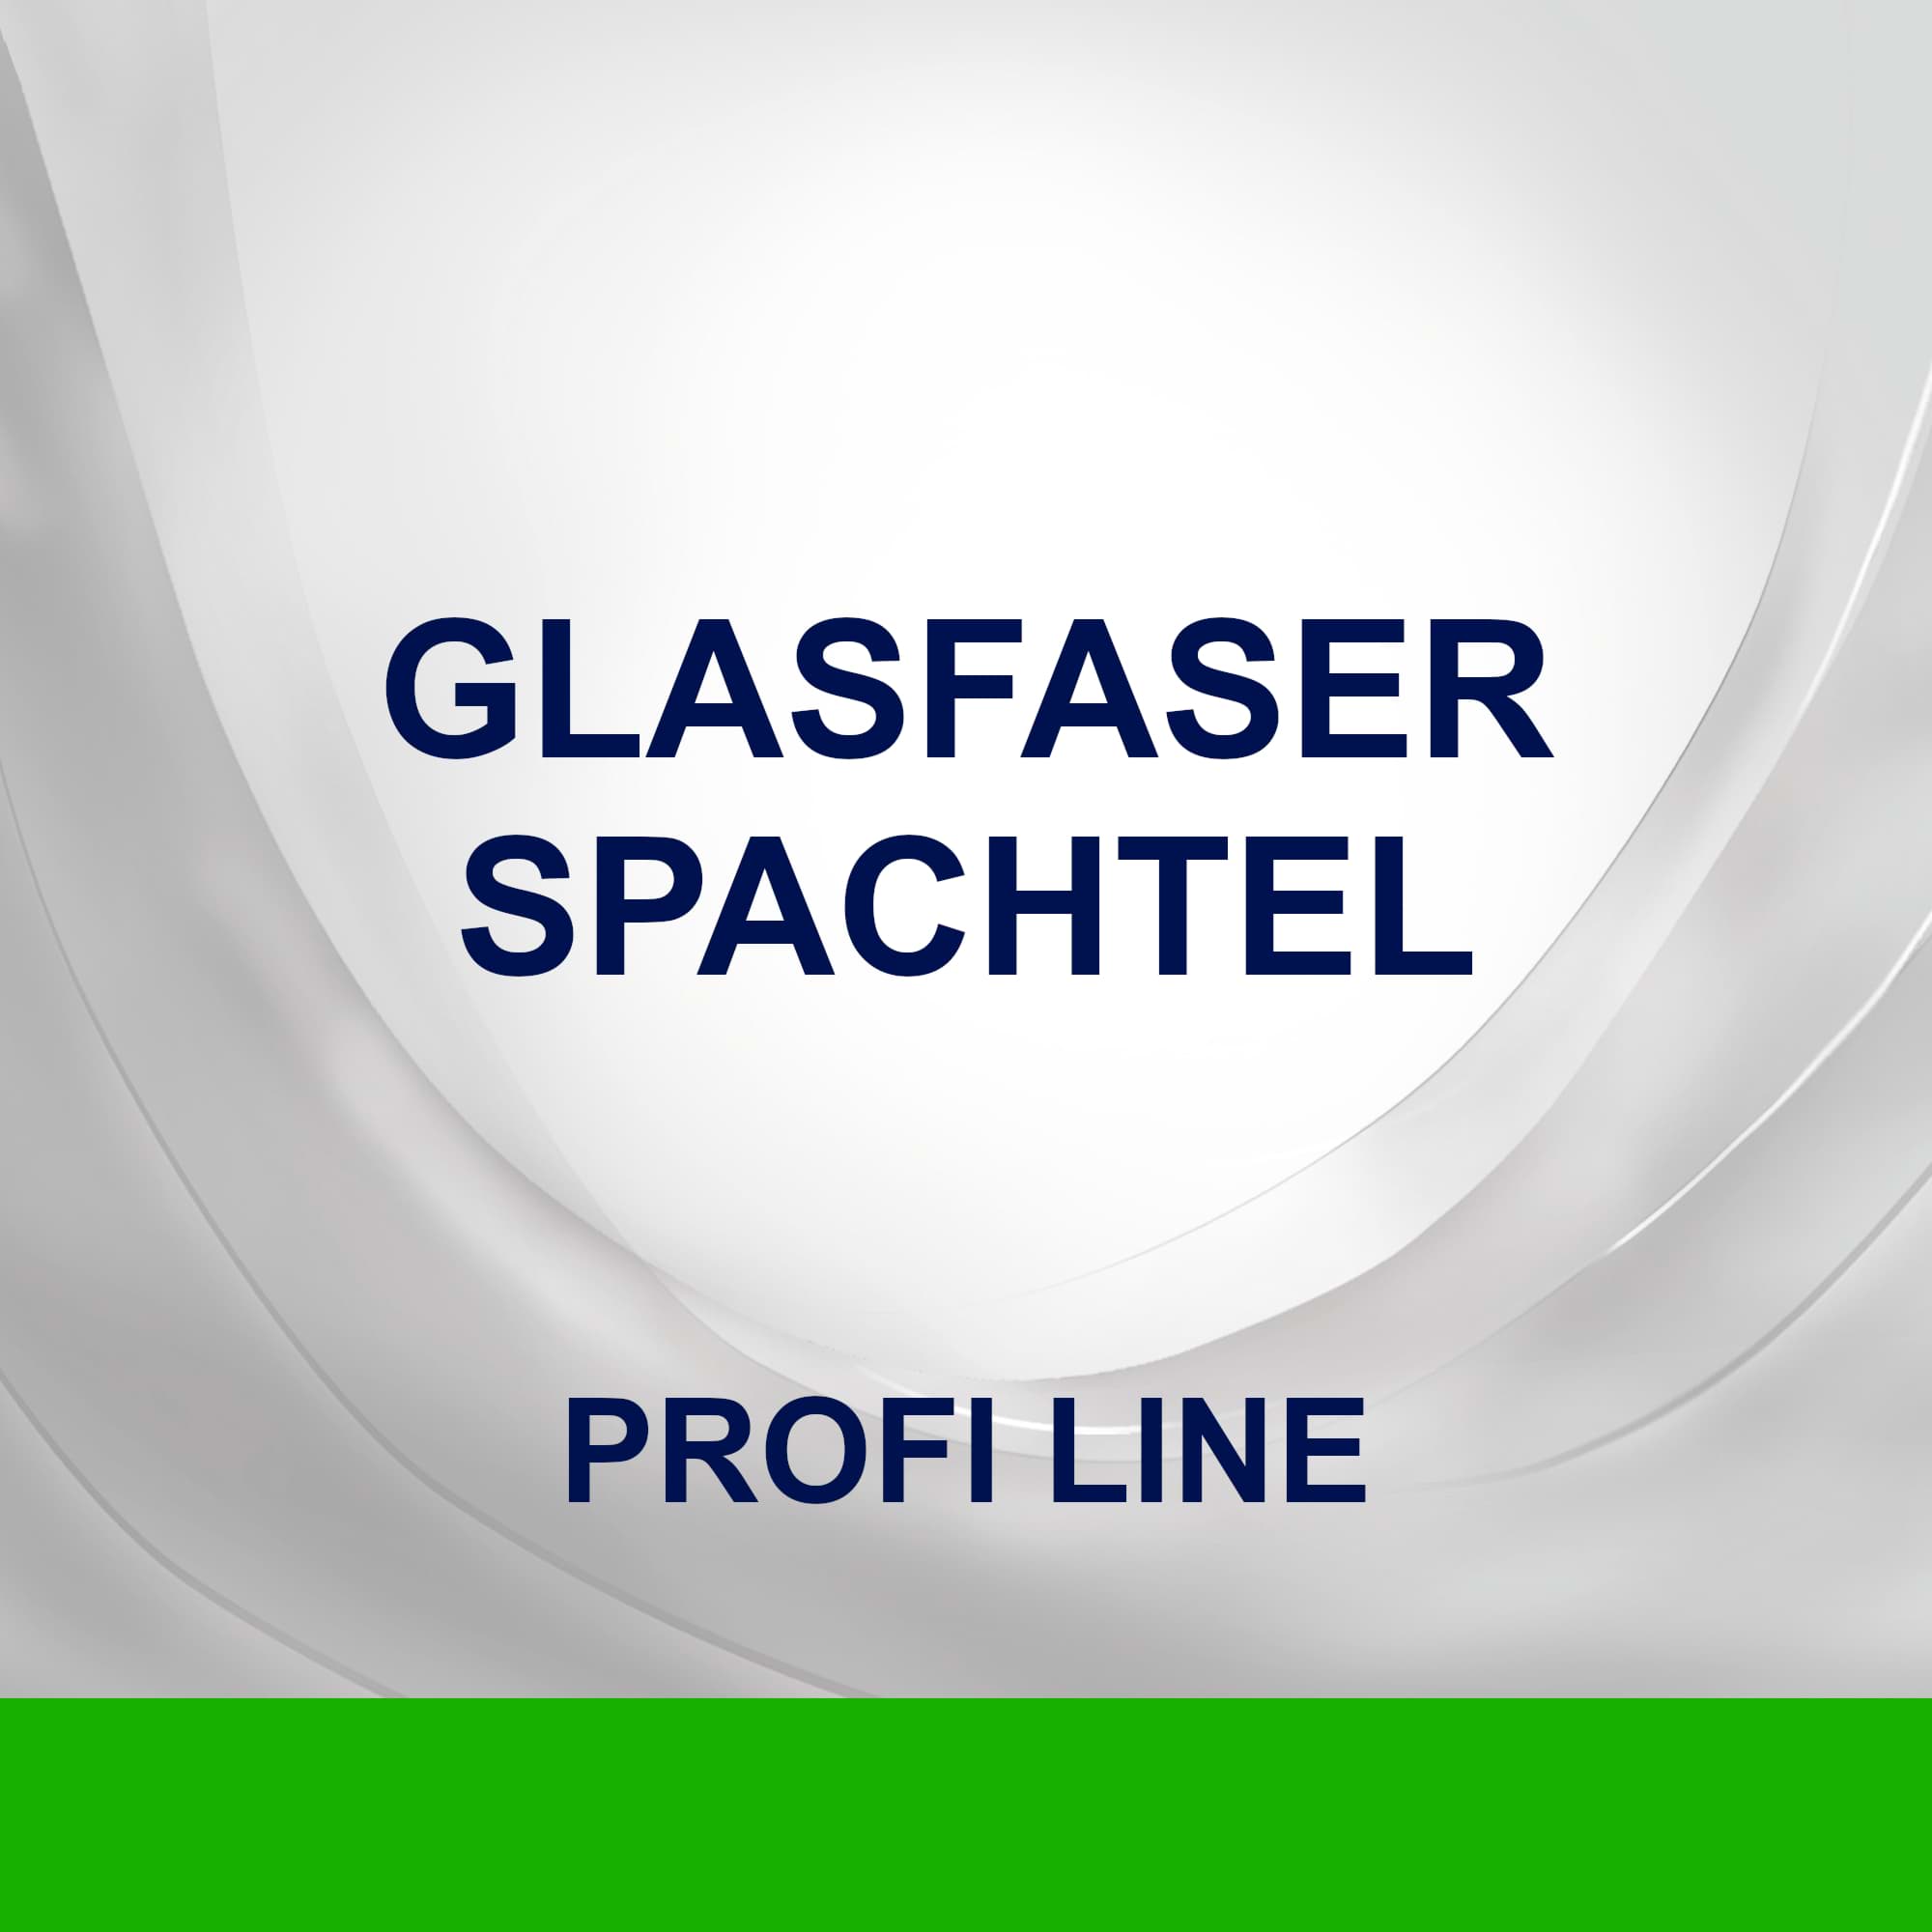 Glasfaserspachtel kategorisi için resim